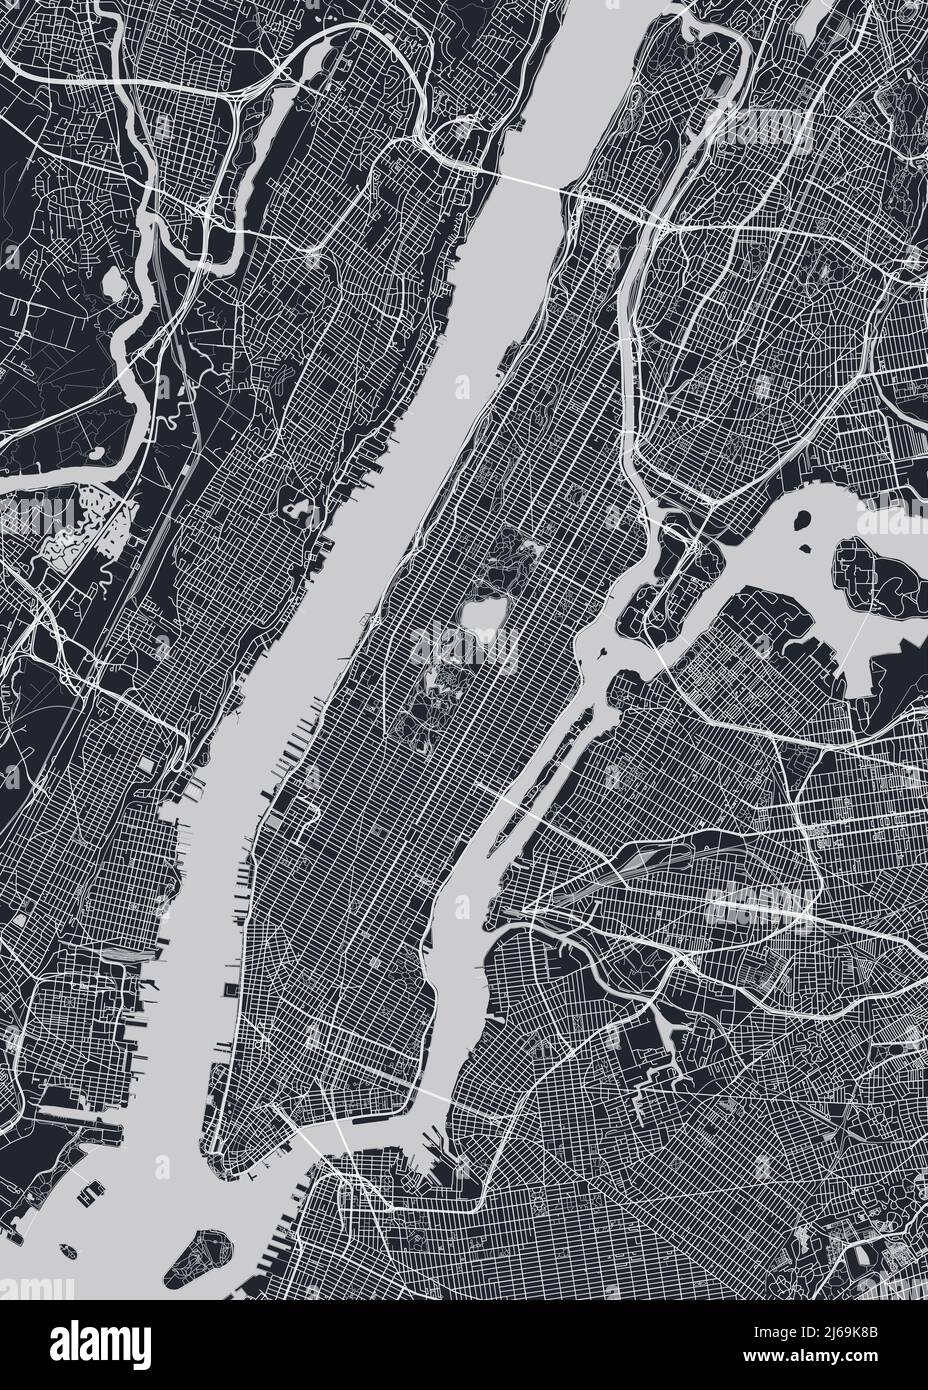 Mappa dettagliata del quartiere di Manhattan New York City, poster vettoriale monocromatico o cartolina vista aerea della città Illustrazione Vettoriale